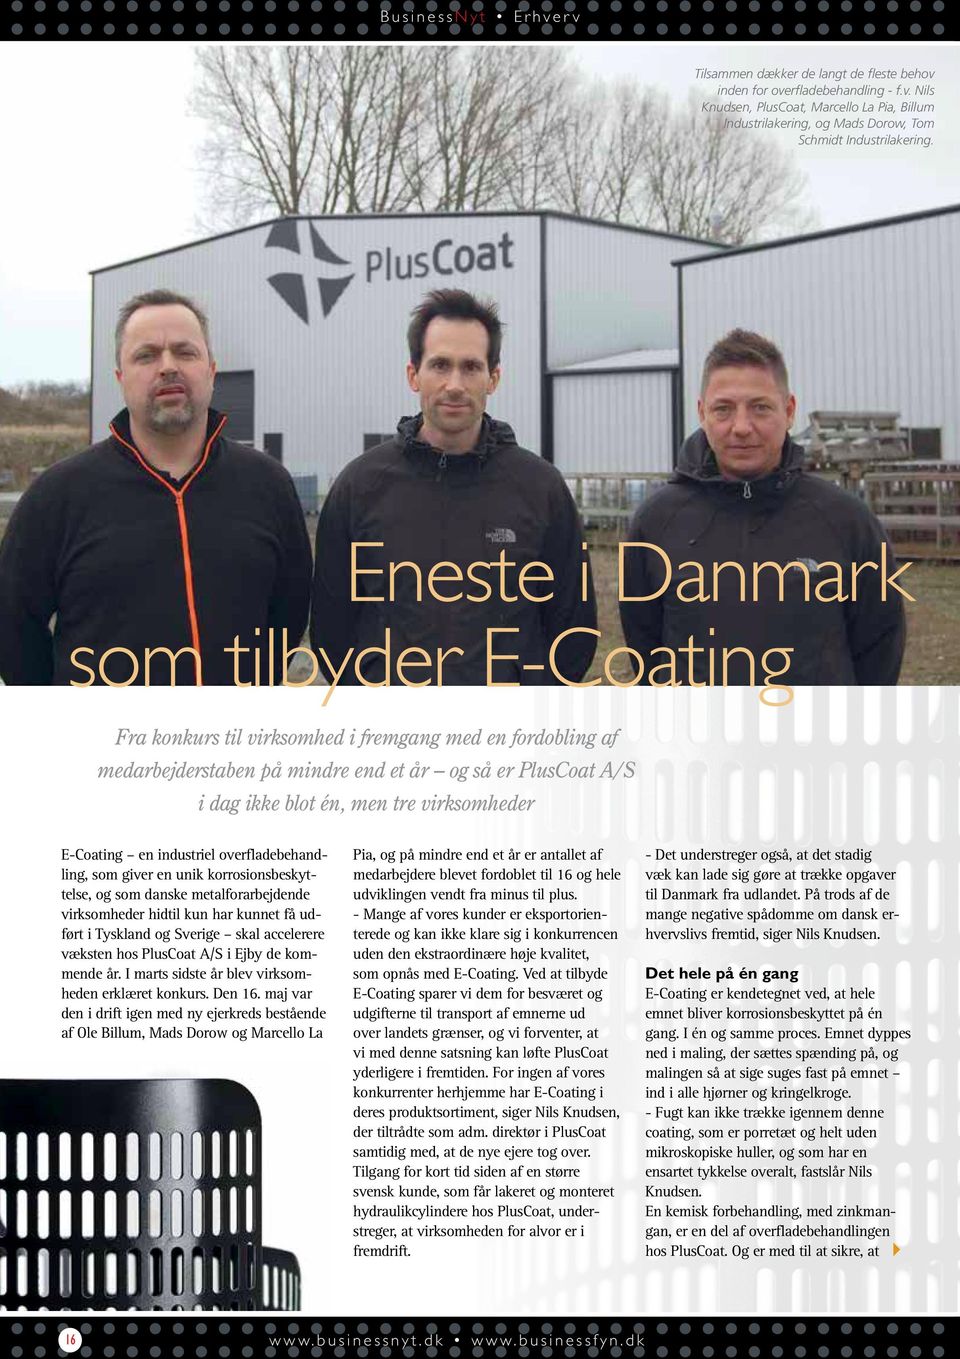 E-Coating en industriel overfladebehandling, som giver en unik korrosionsbeskyttelse, og som danske metalforarbejdende virksomheder hidtil kun har kunnet få udført i Tyskland og Sverige skal